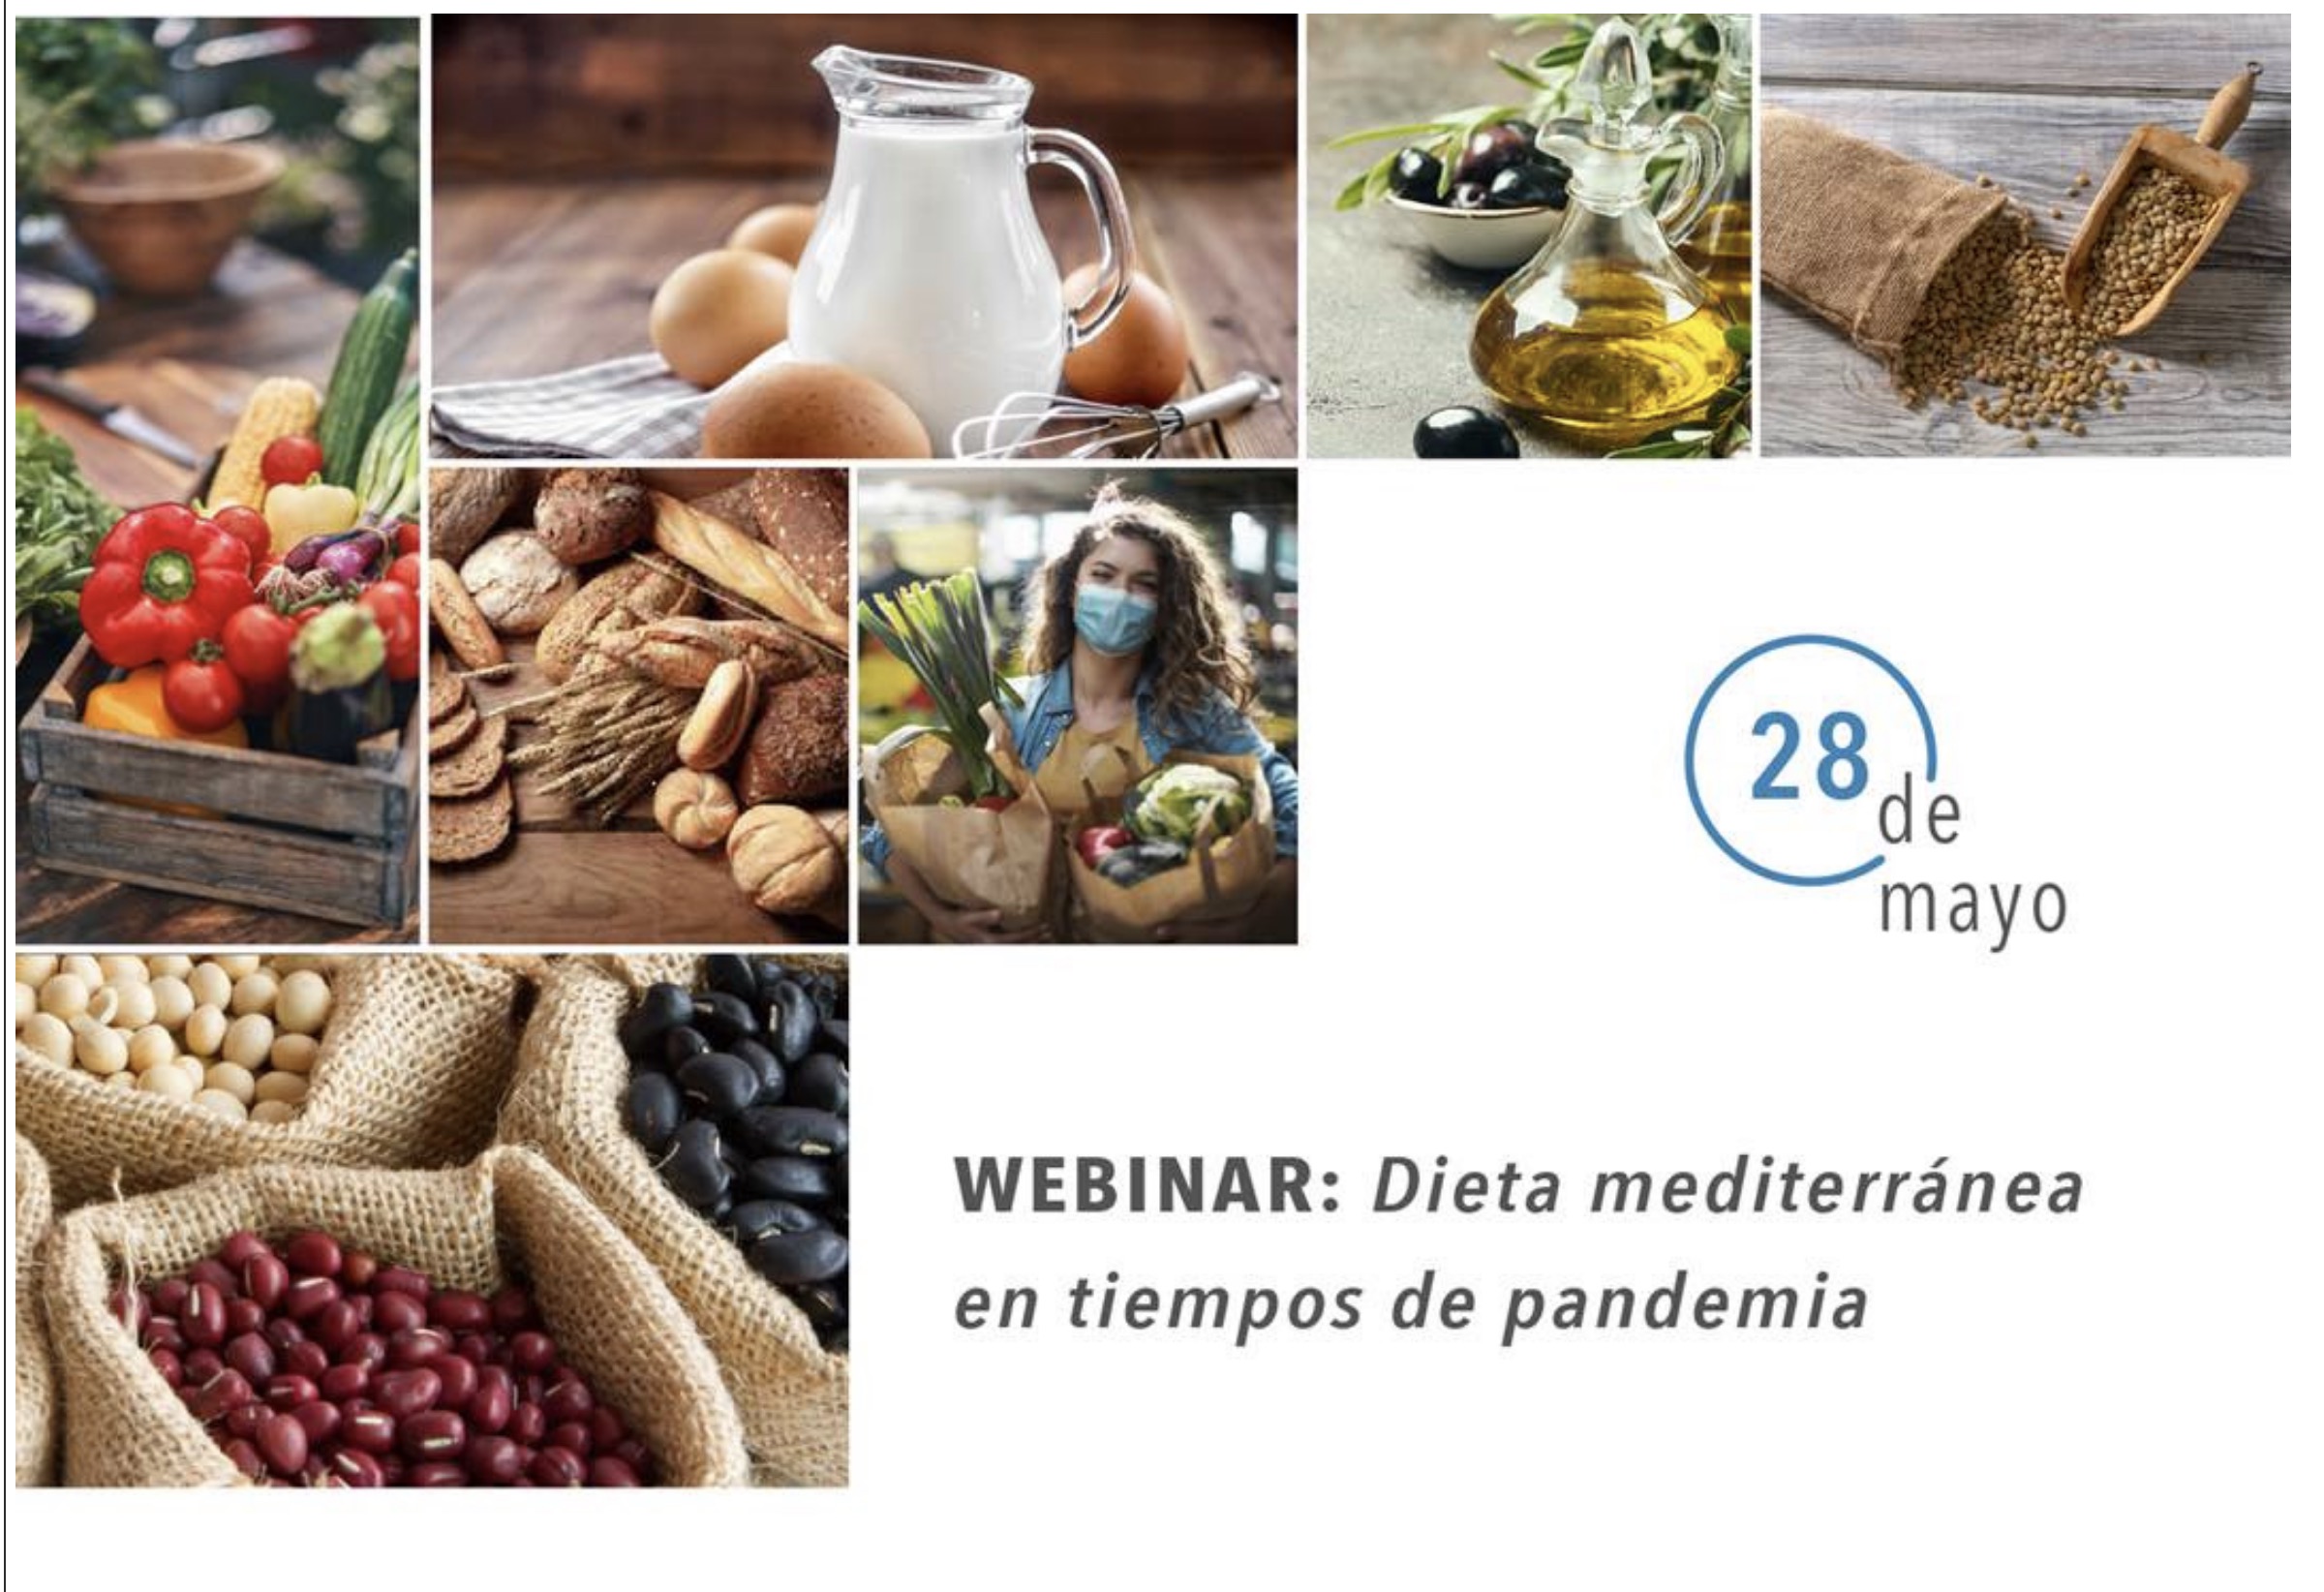 Seminari web: Dieta mediterrània en temps de pandèmia, 28 de maig